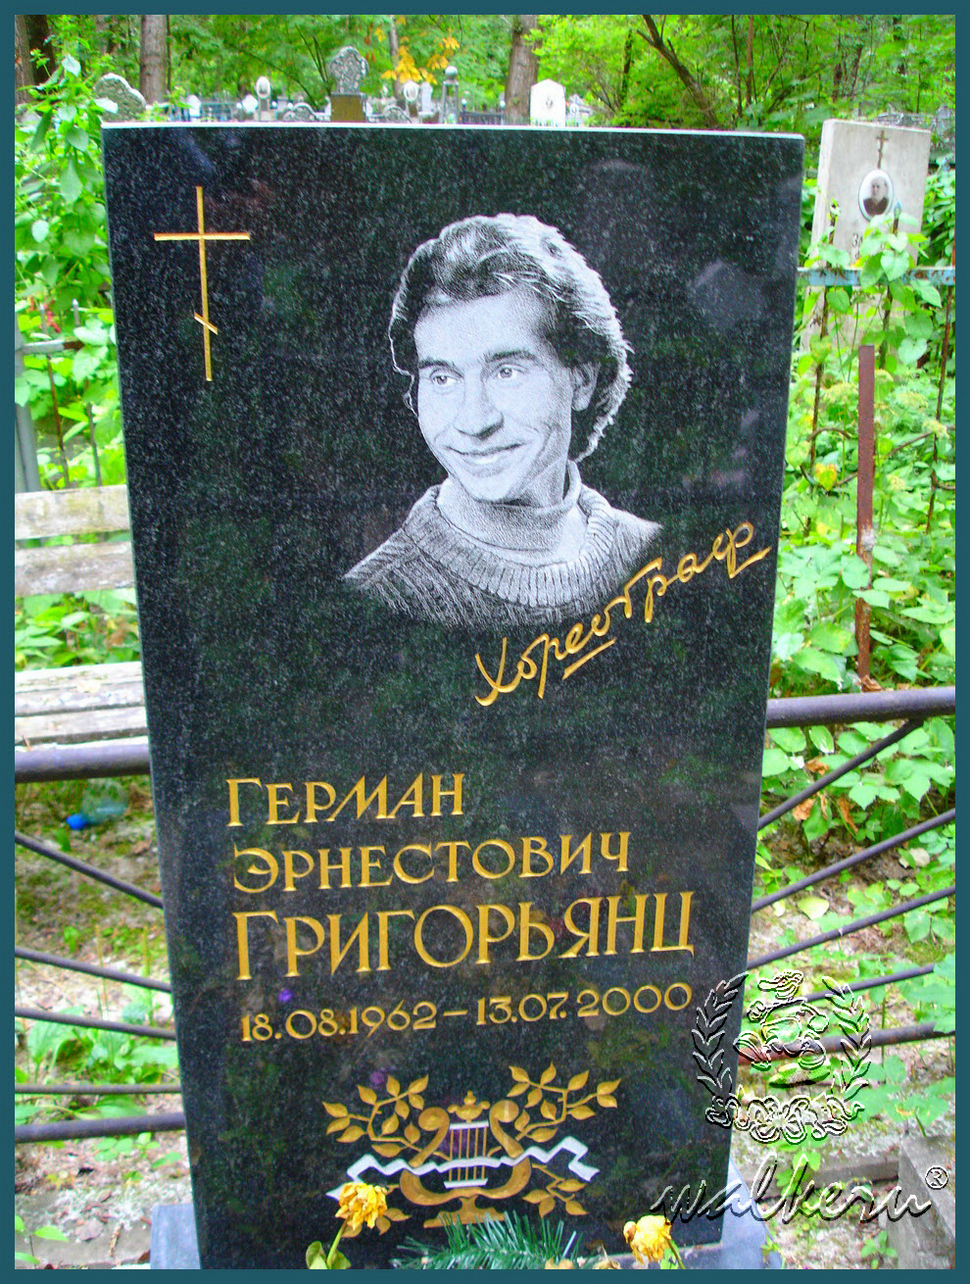 Могила Григорьянц Г.Э. на Красненьком кладбище